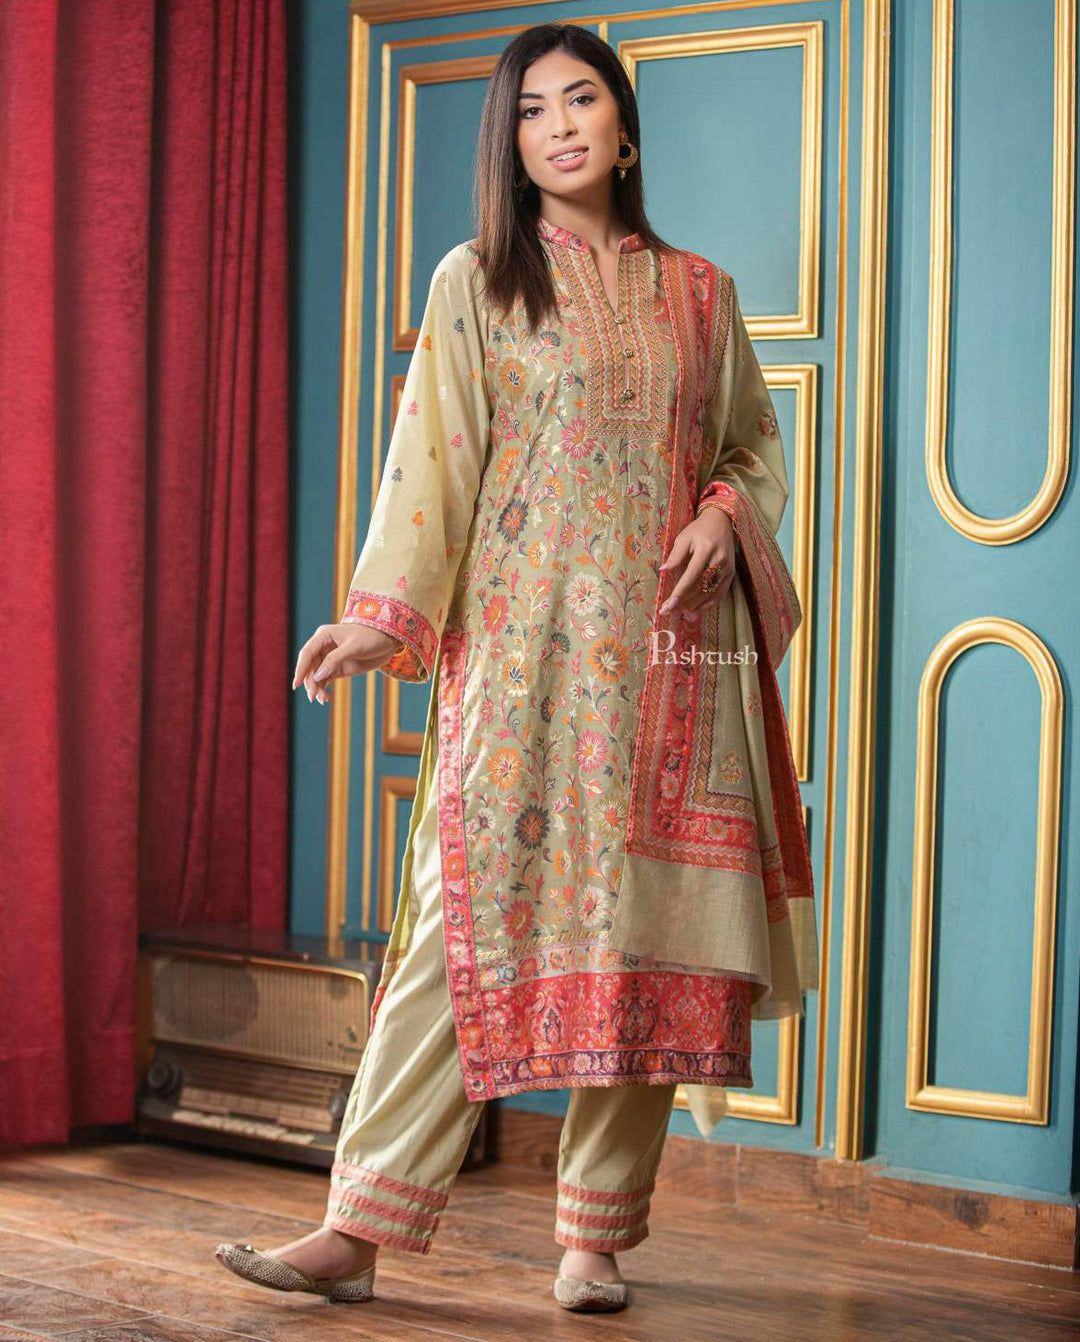 Pashtush India suit Pashtush Womens Ethnic Weave Cotton-Silk Unstitched Suit, Sombre Florals